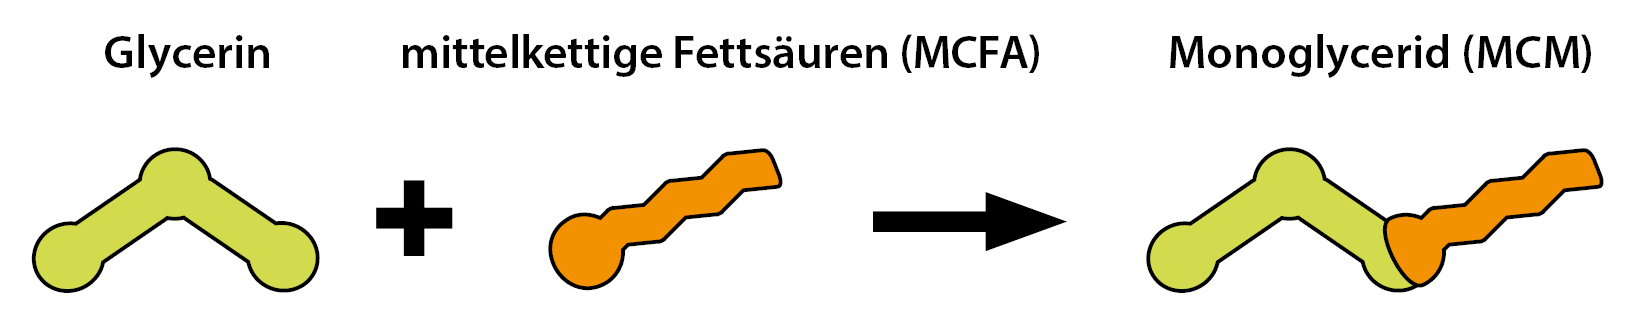 srednjelančane masne kiseline i monogliceridi (MCM)